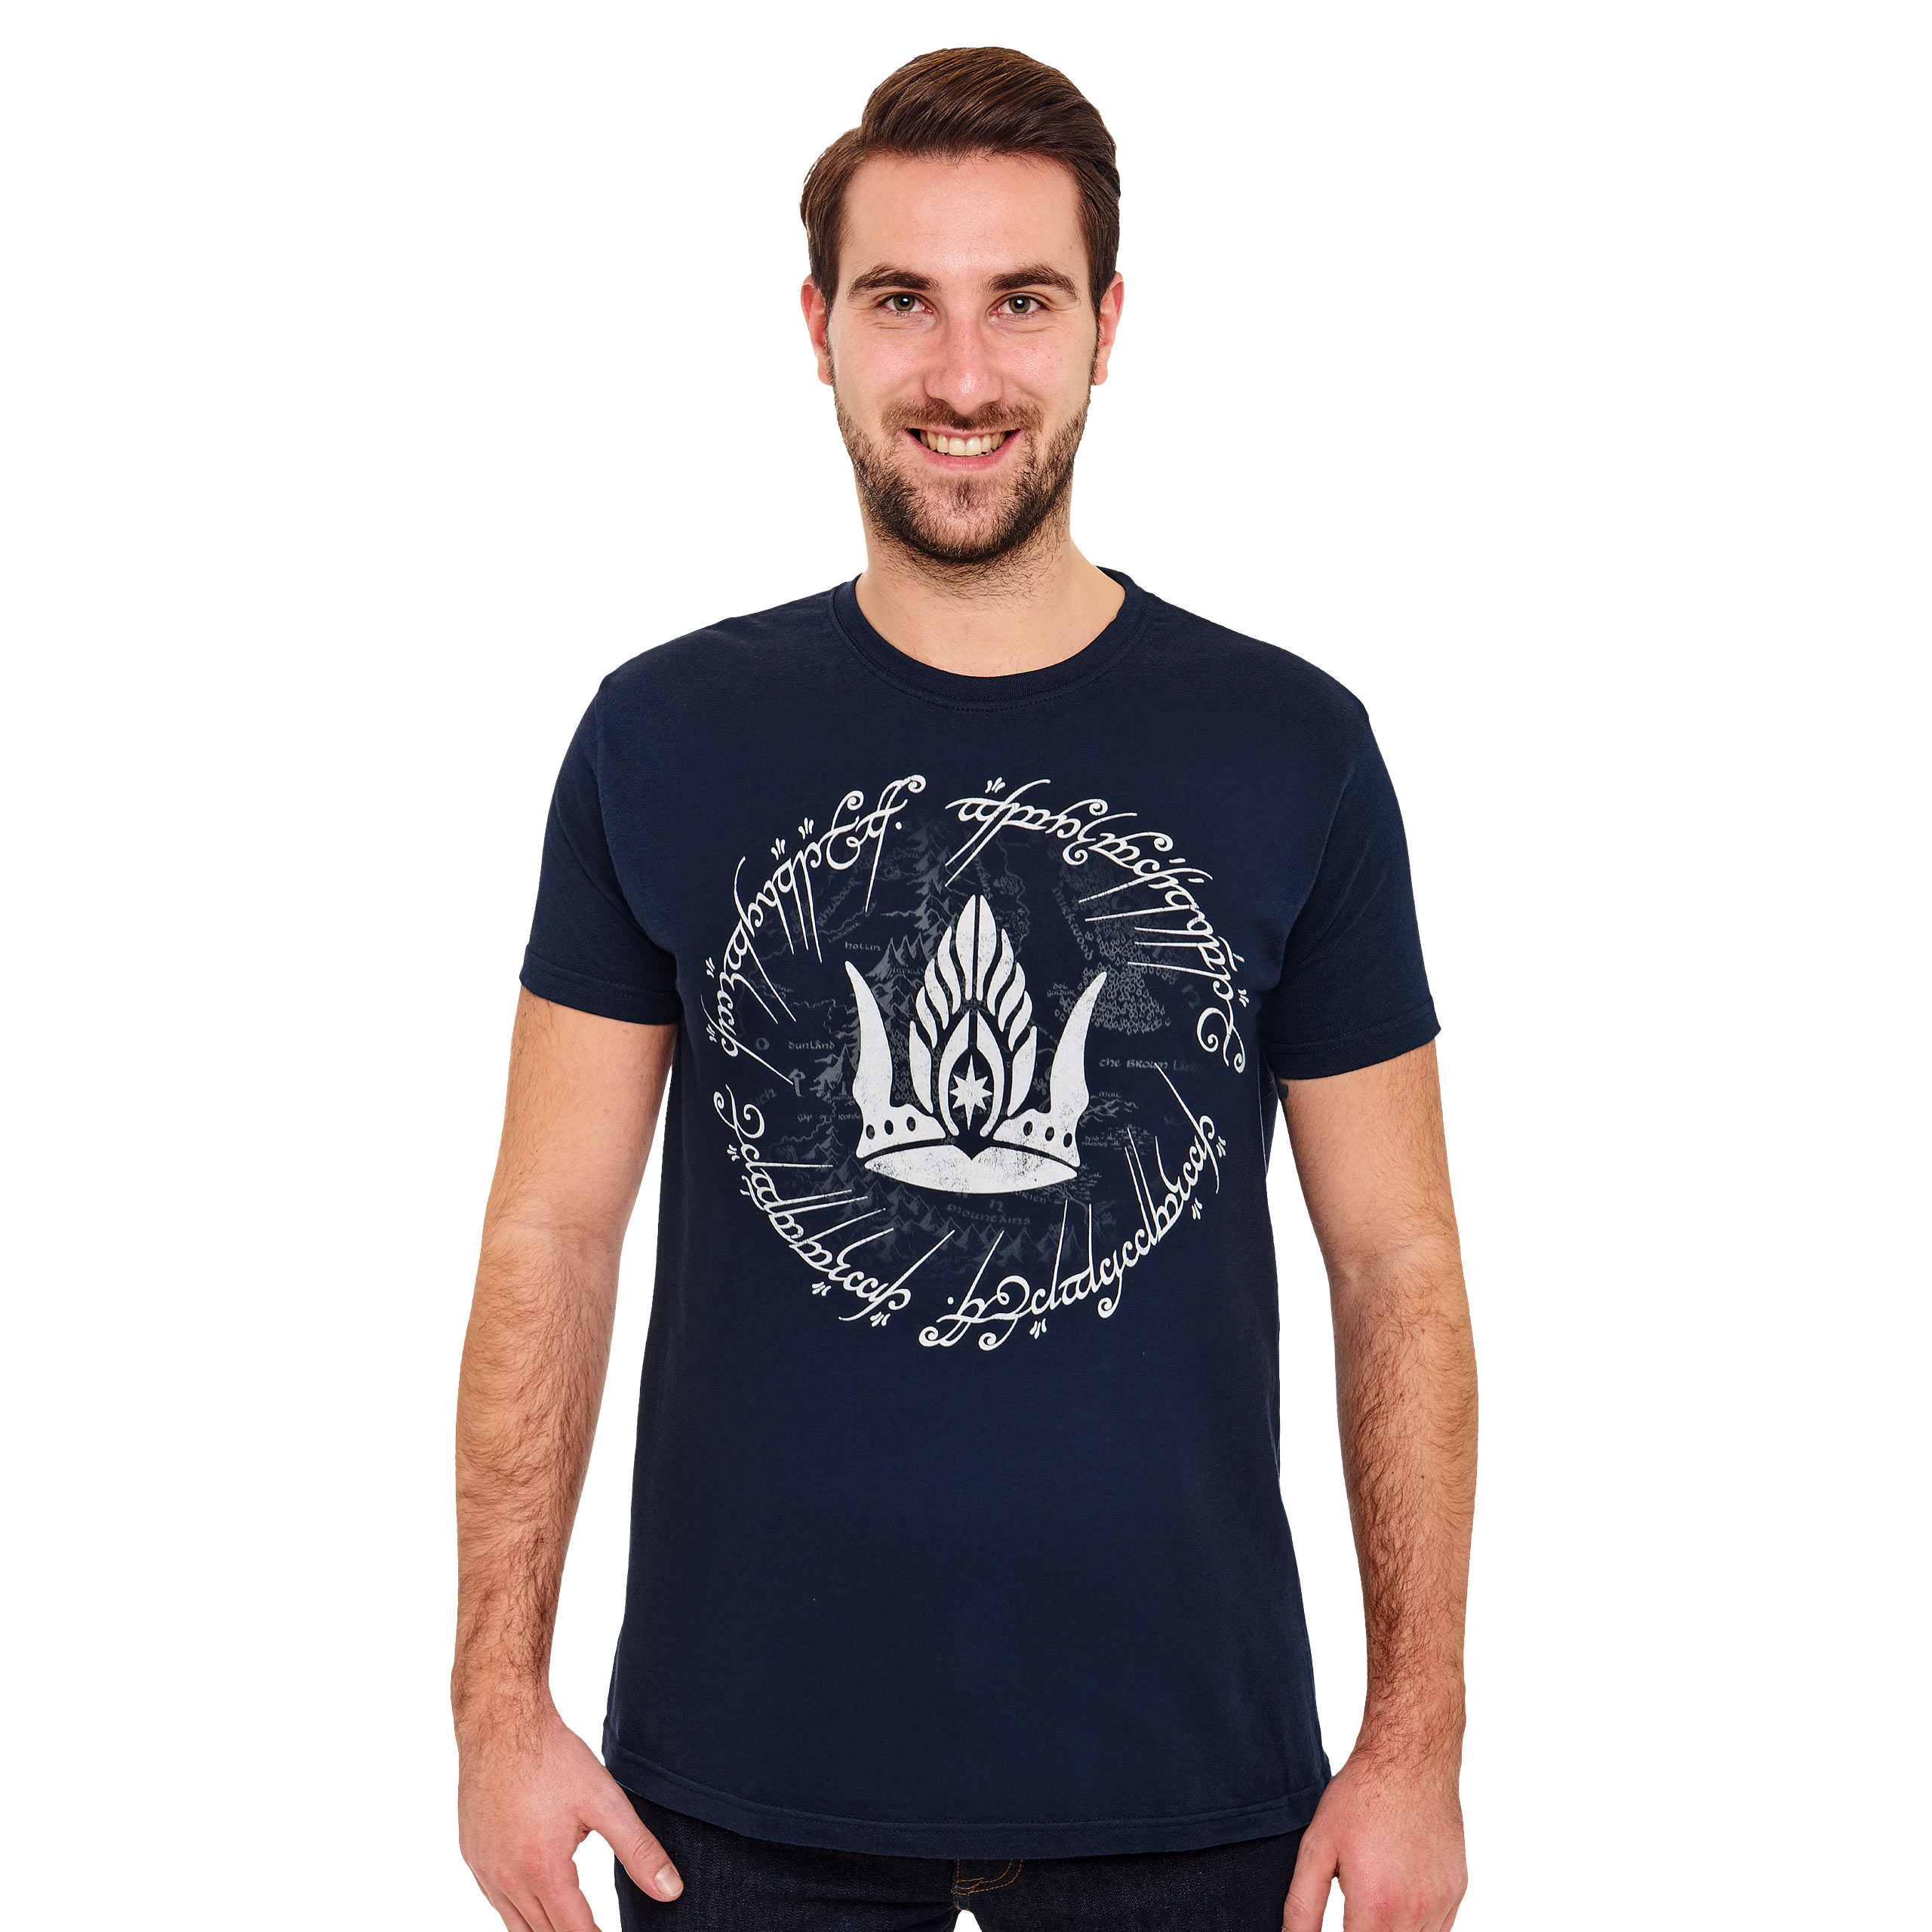 Herr der Ringe - Krone von Gondor T-Shirt blau